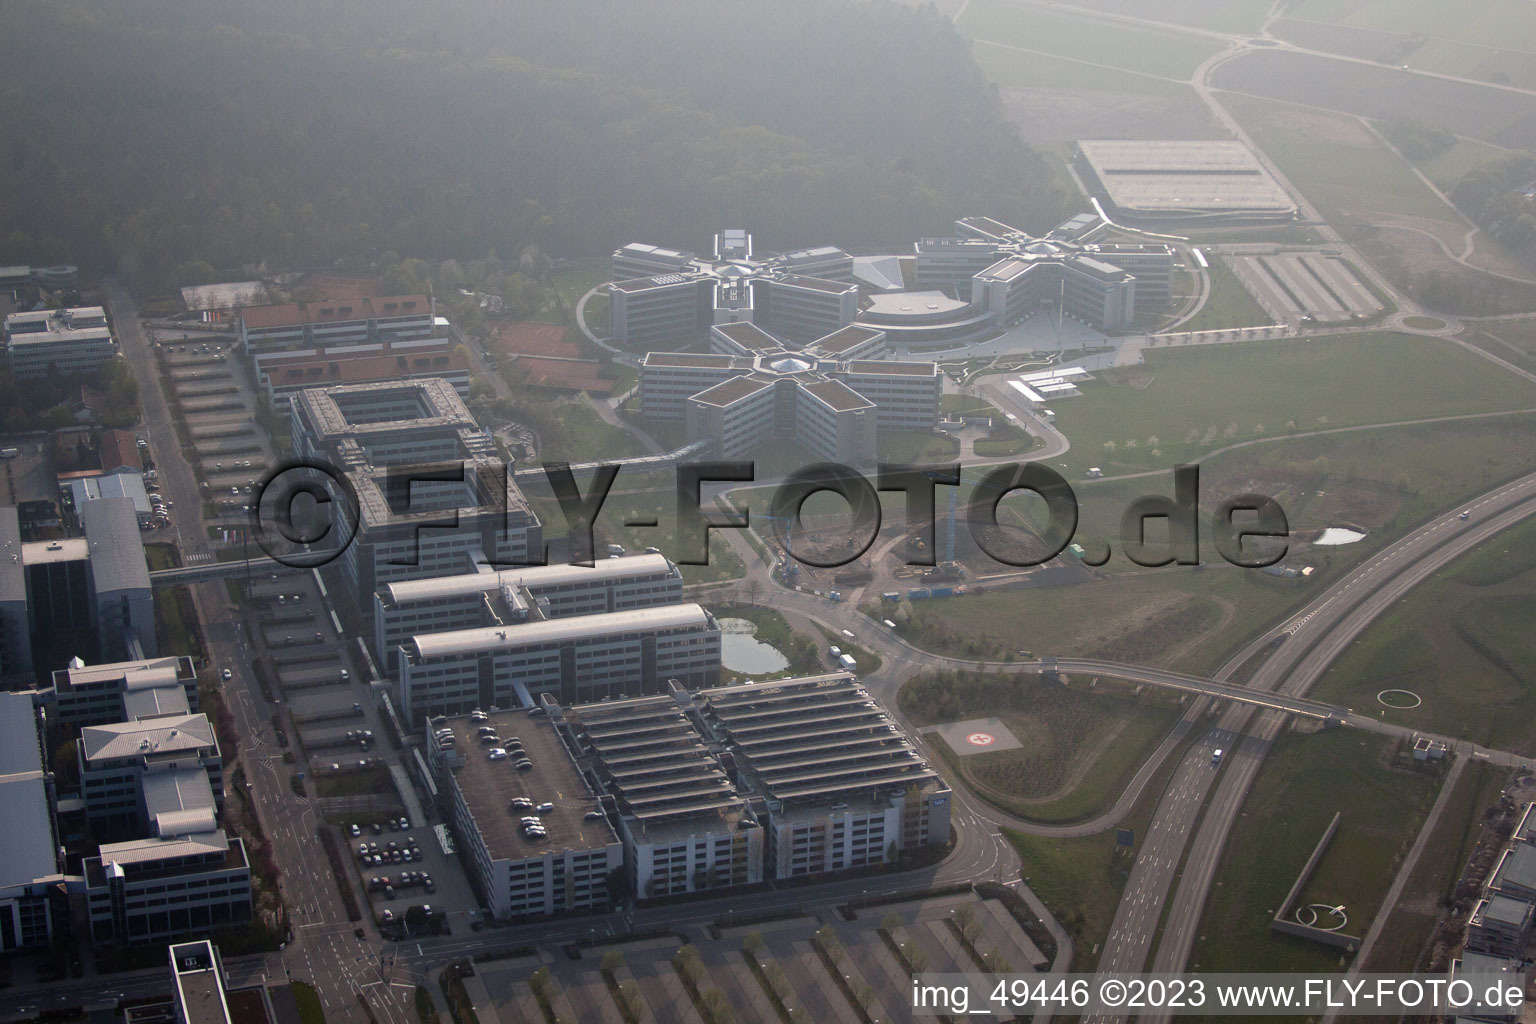 Vue aérienne de Zone industrielle, SAP AG à Walldorf dans le département Bade-Wurtemberg, Allemagne